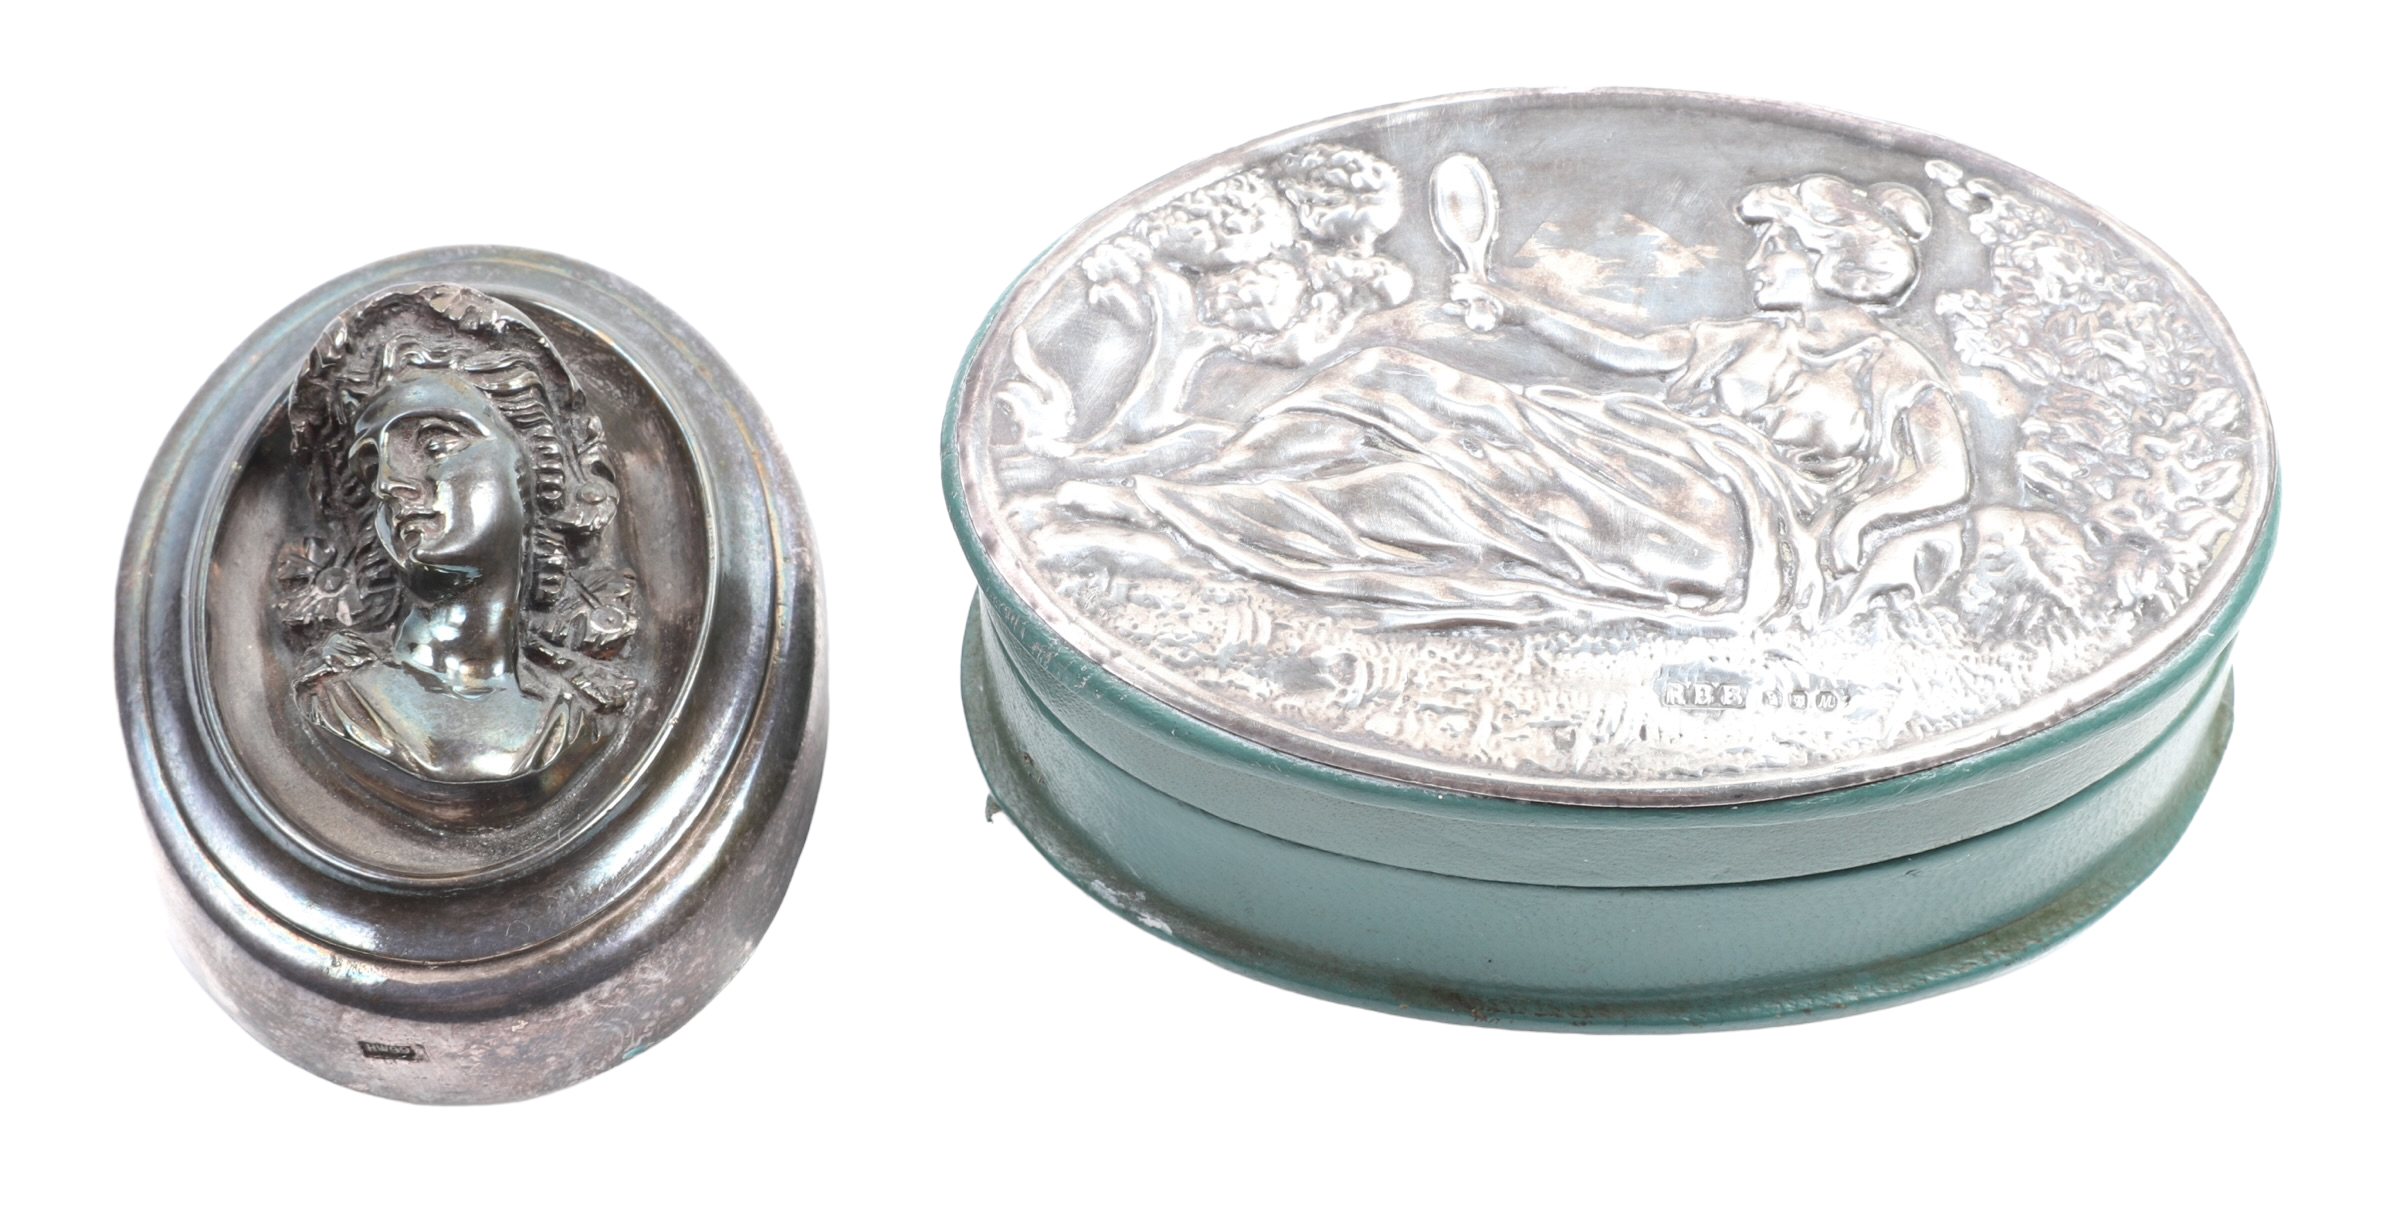  2 Art Nouveau silver repousse 317e72